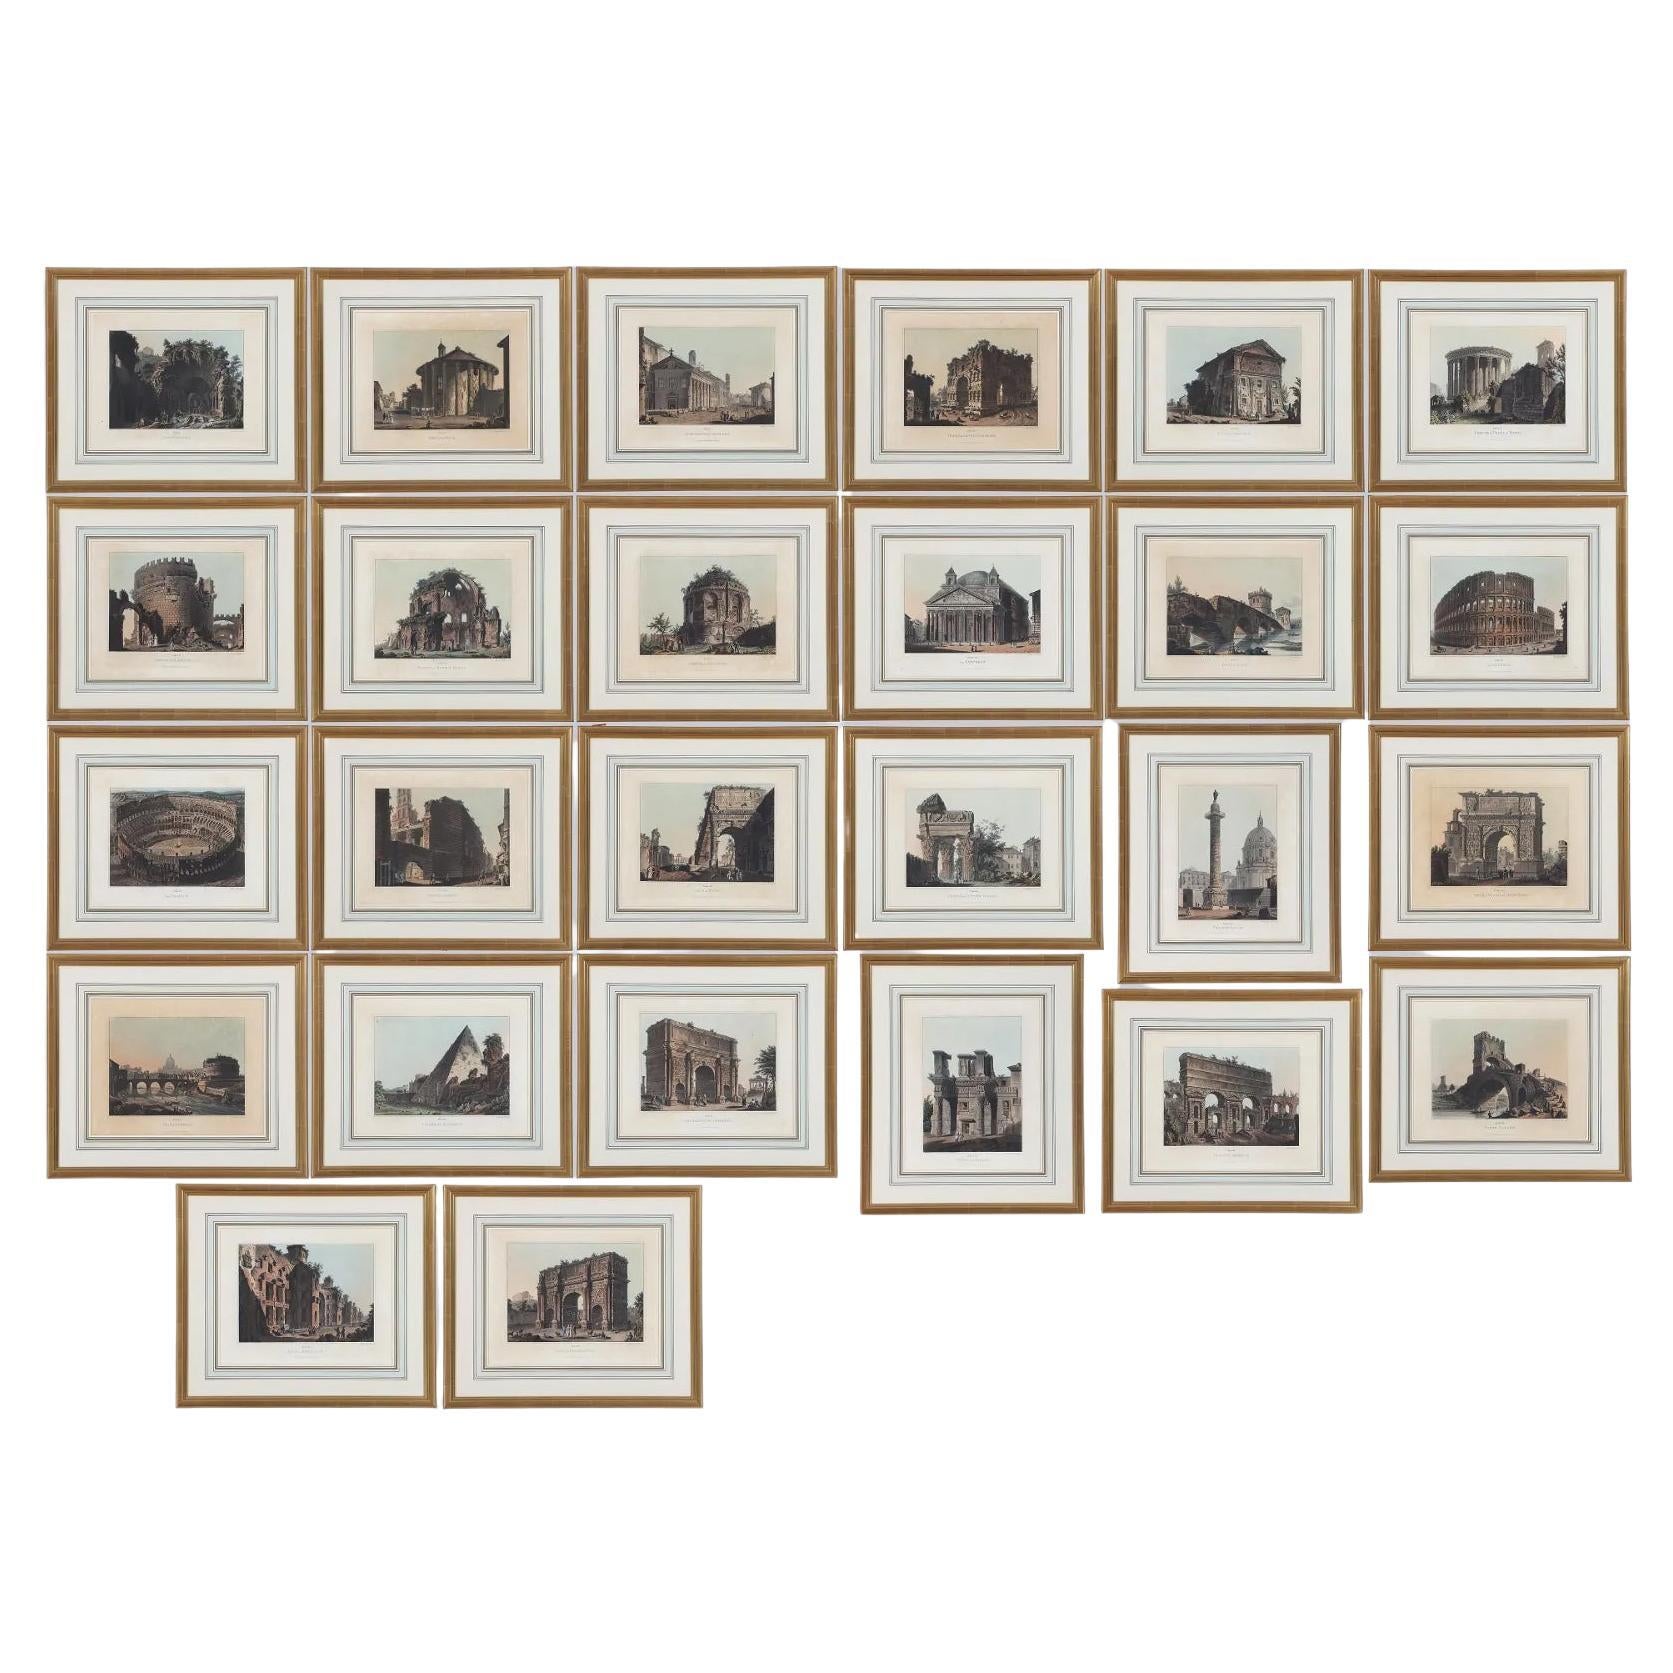  Twenty Six Framed Engravings Of " Views of  Ancient Buildings in Rome"